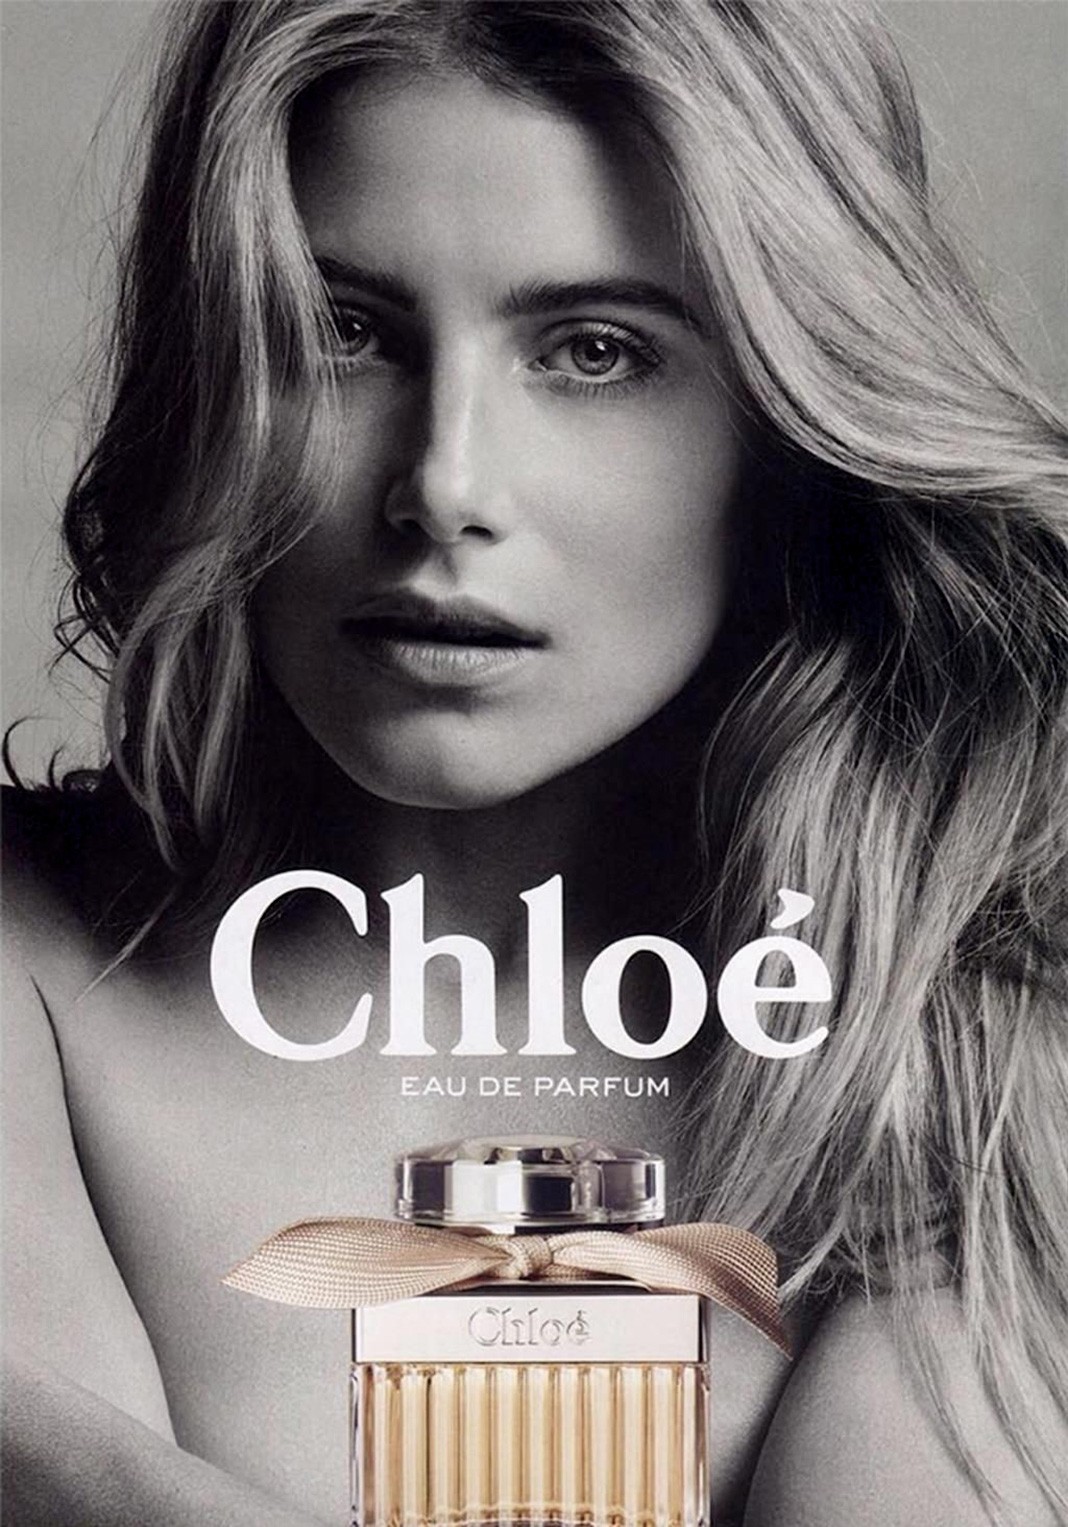 В рекламной кампании Chloé